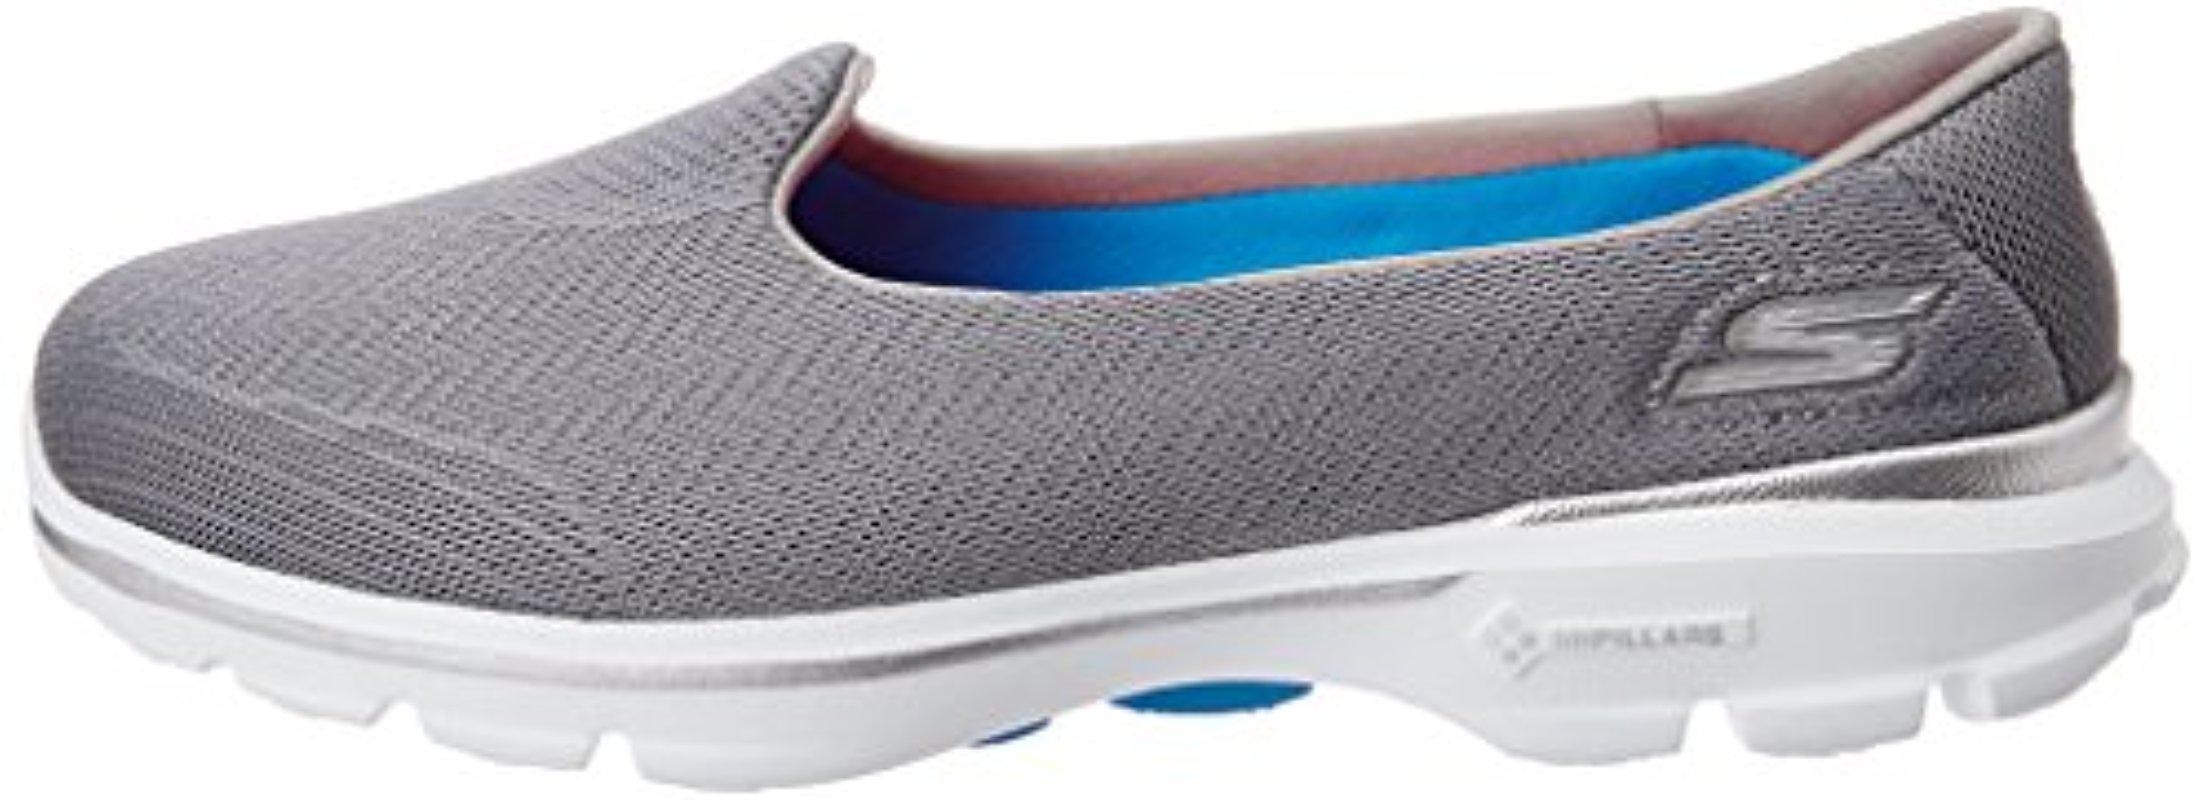 Skechers Performance Go Walk 3 Insight Slip-on Walking Shoe in Gray - Lyst